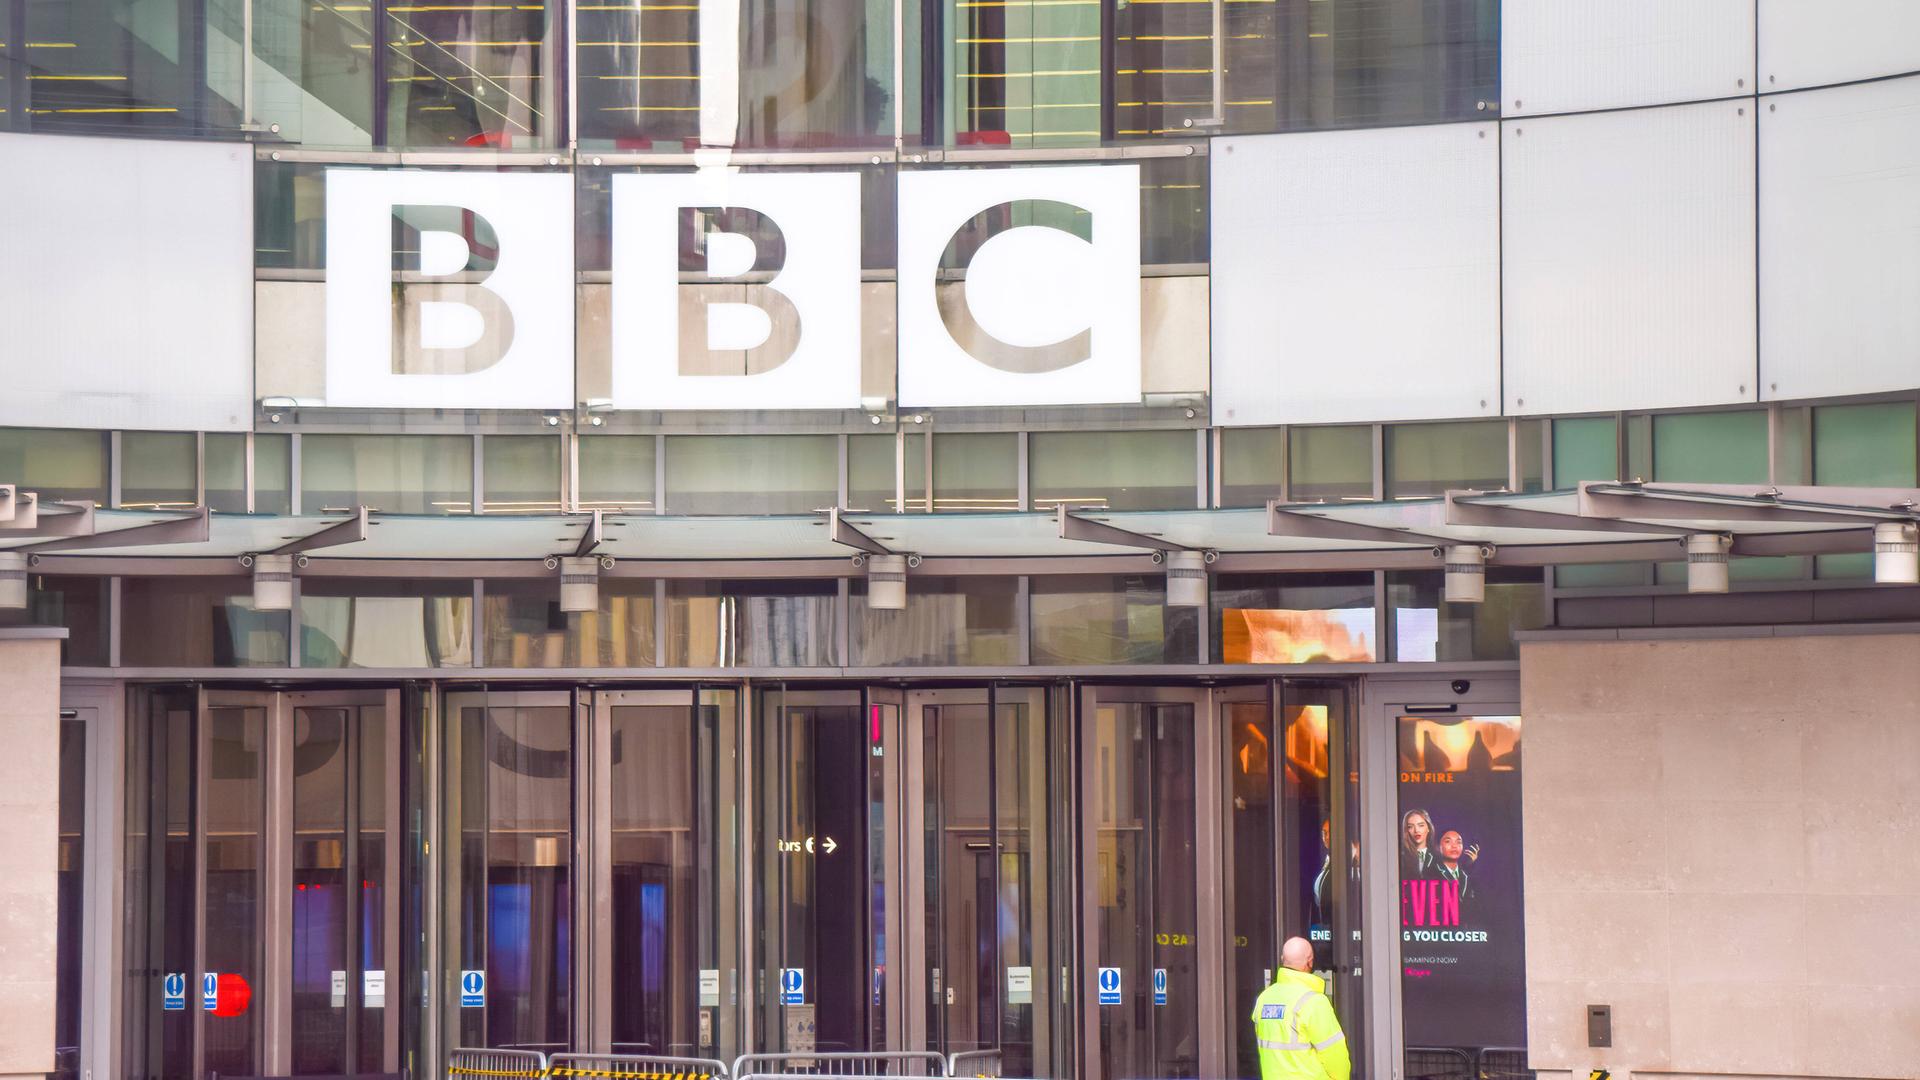 Eingangsbereich des BBC Broadcasting House im Zentrum von London. Über den gläsernen Eingangstüren ist der Schriftzug "BBC" zu sehen. Vor den Türen steht ein Sicherheitsmann in gelber Warnweste mit dem Rücken zur Kamera.